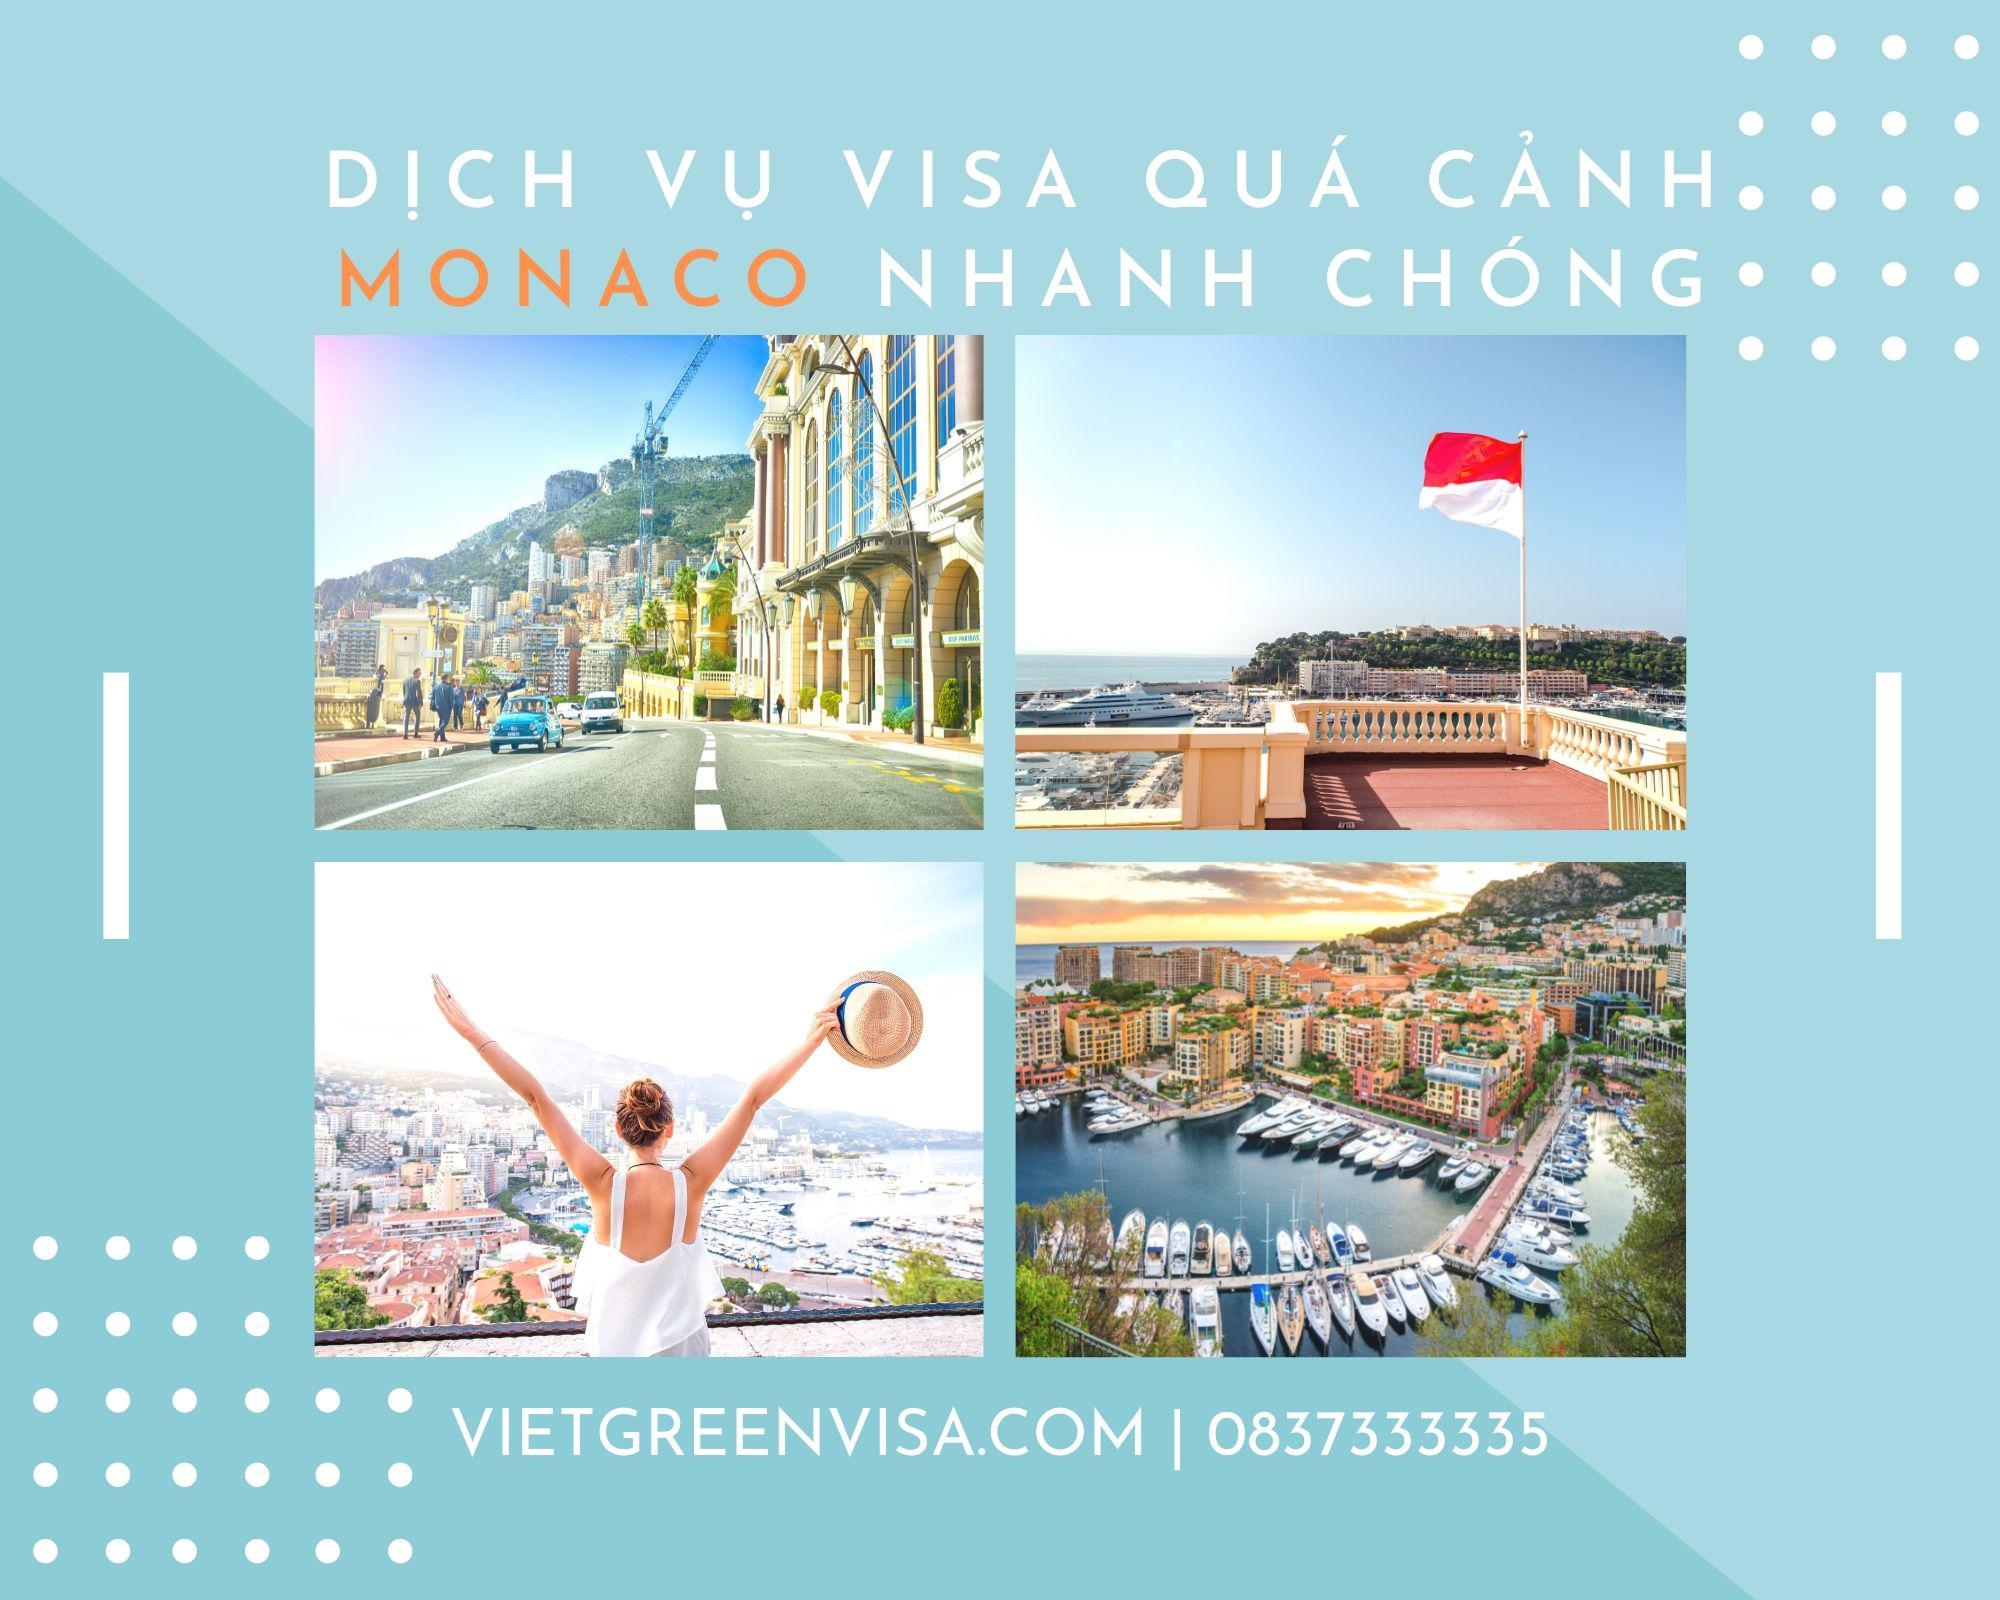 Dịch vụ visa quá cảnh qua Monaco, visa Monaco transit uy tín